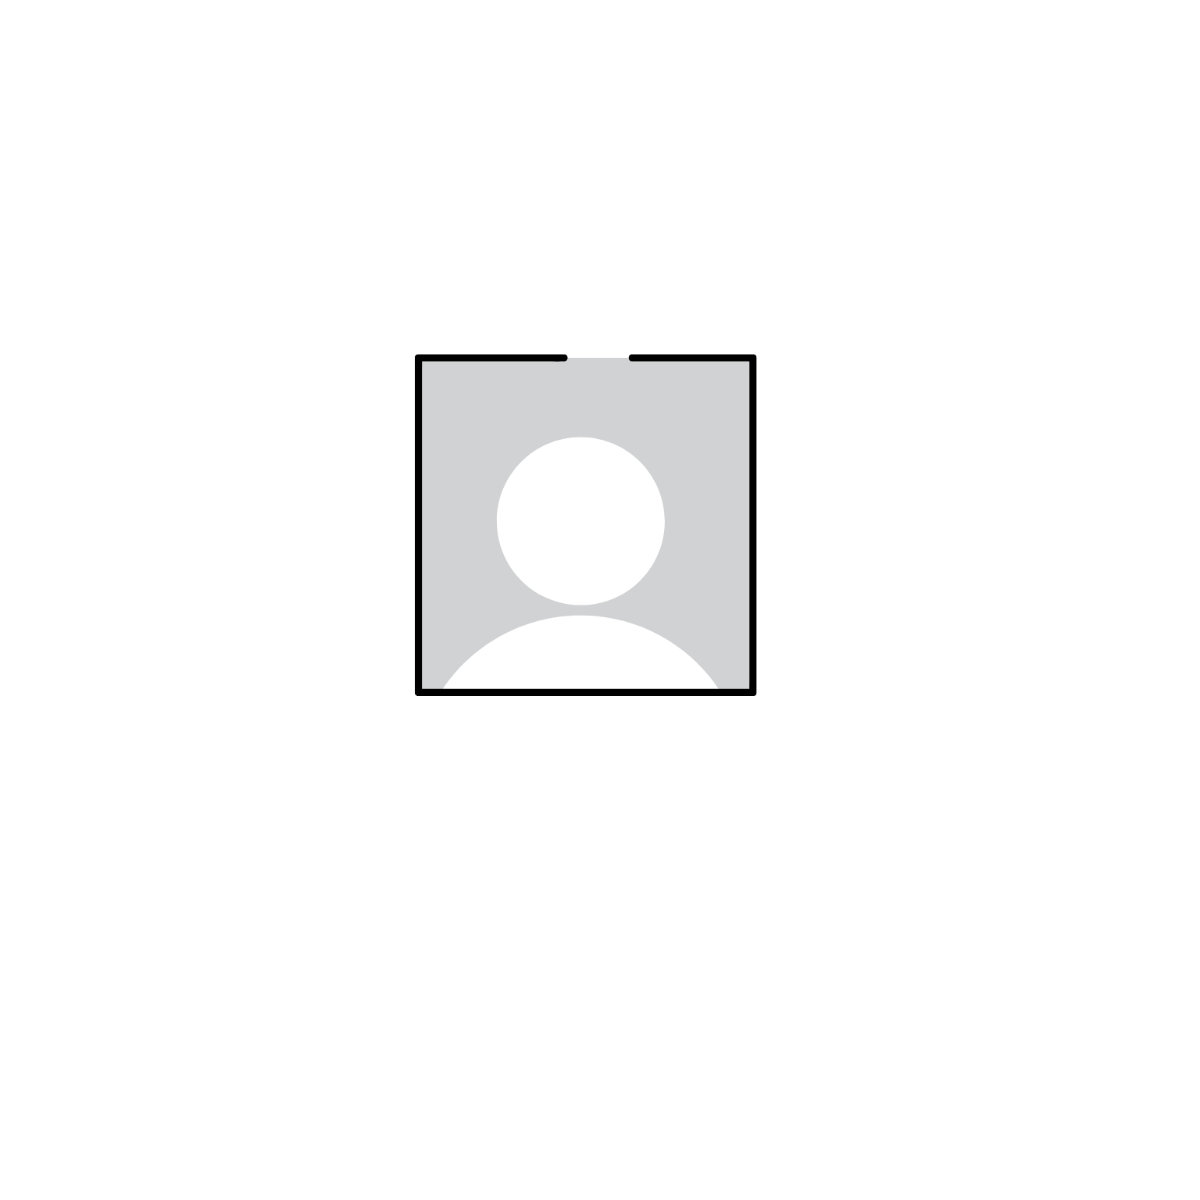 User Profile Icon